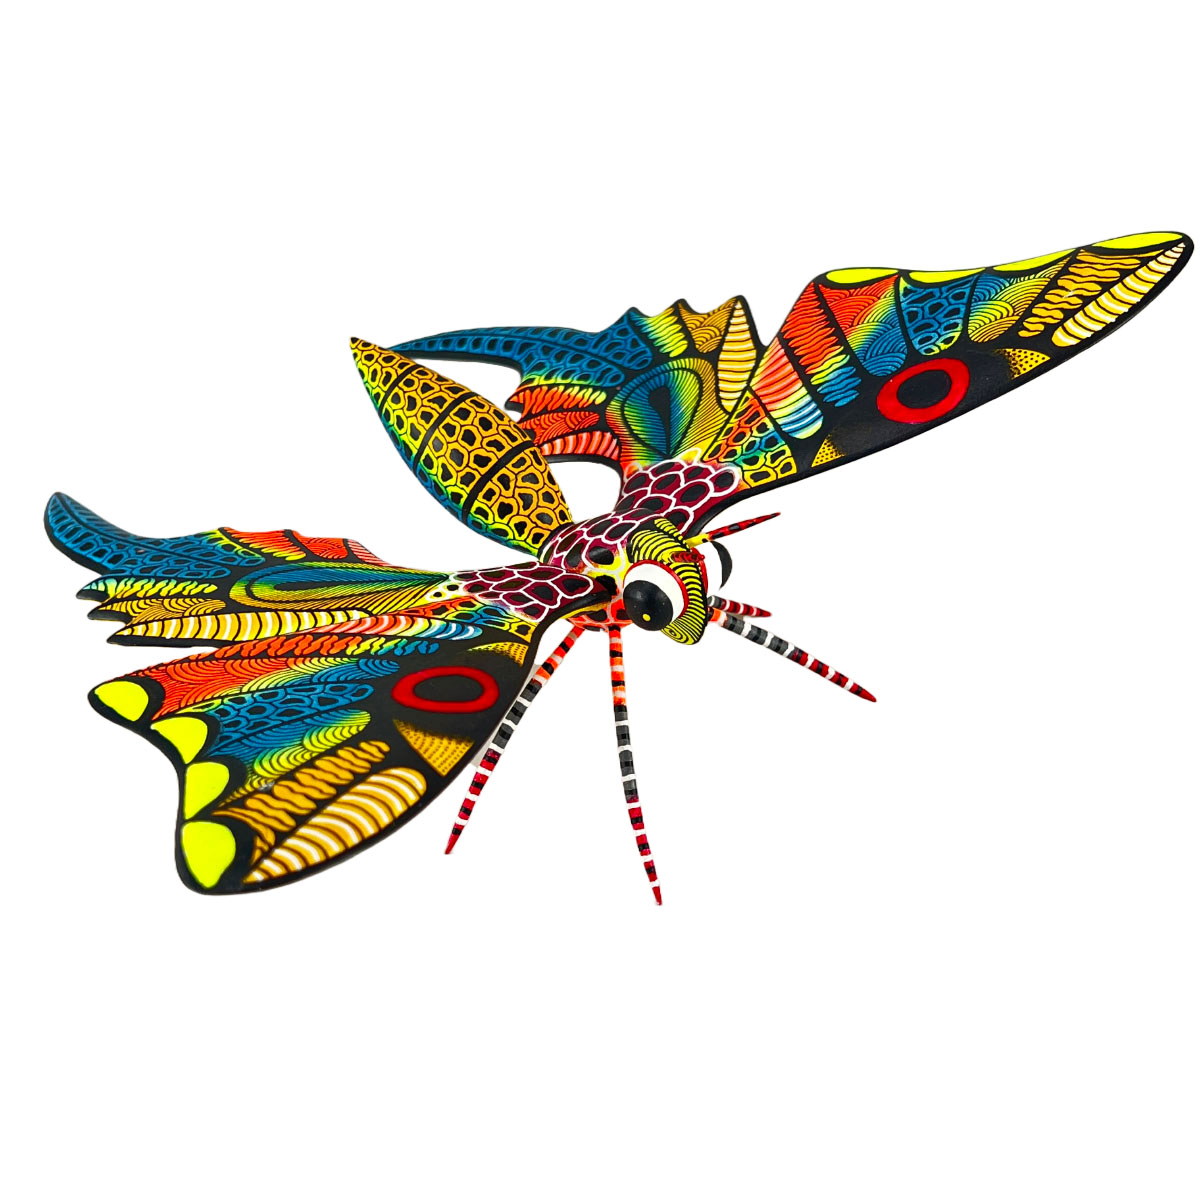 Raul Blas Raul Blas: Large Butterfly Butterfly